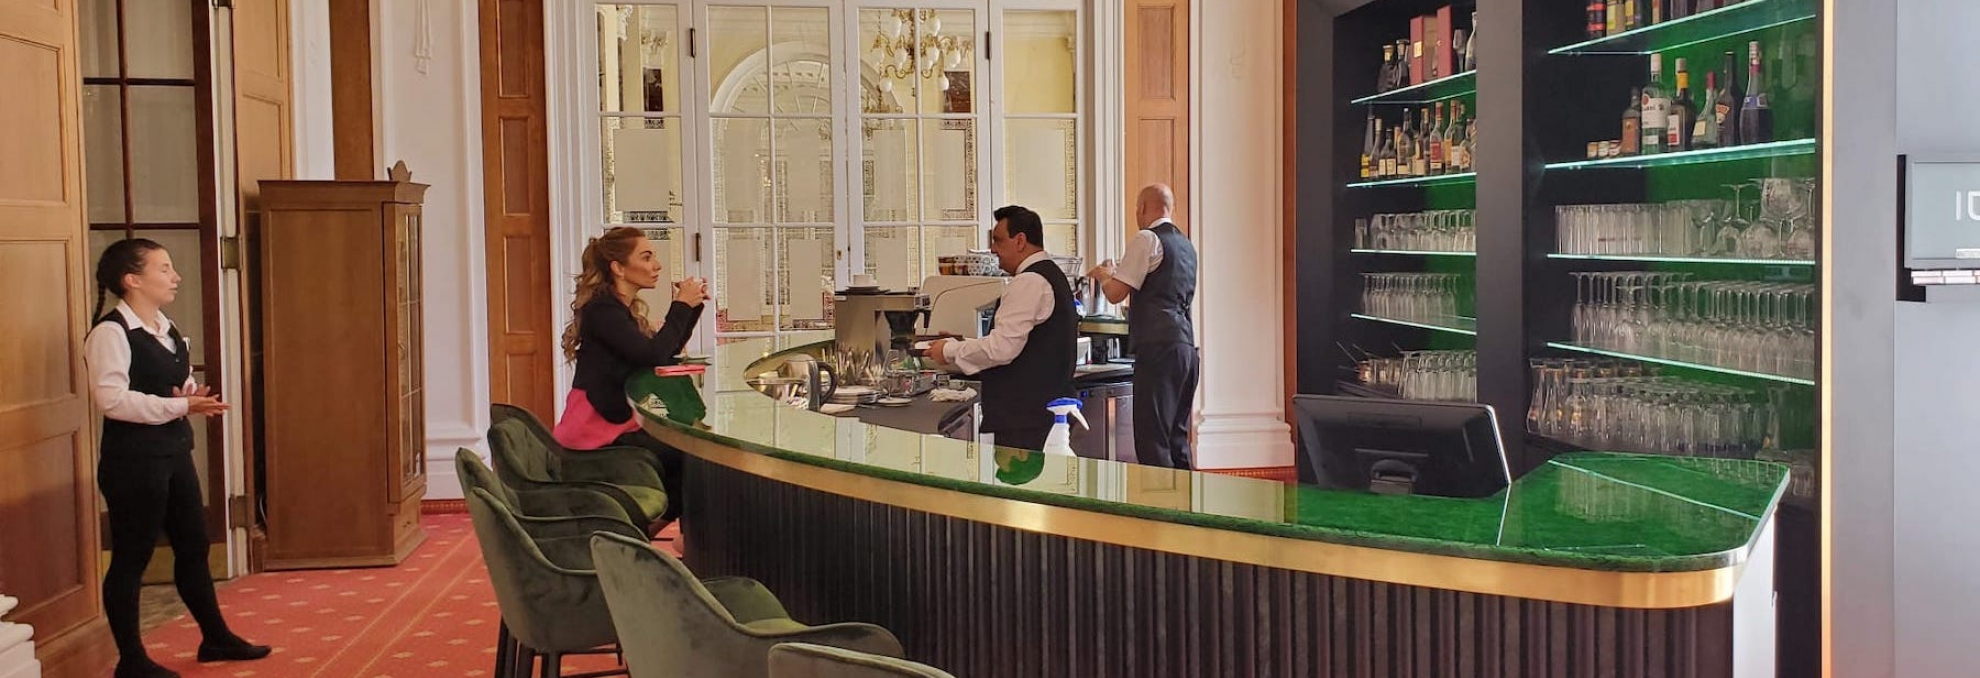 Mattoni bar ze skleněných desek Magna v karlovarském hotelu Imperial